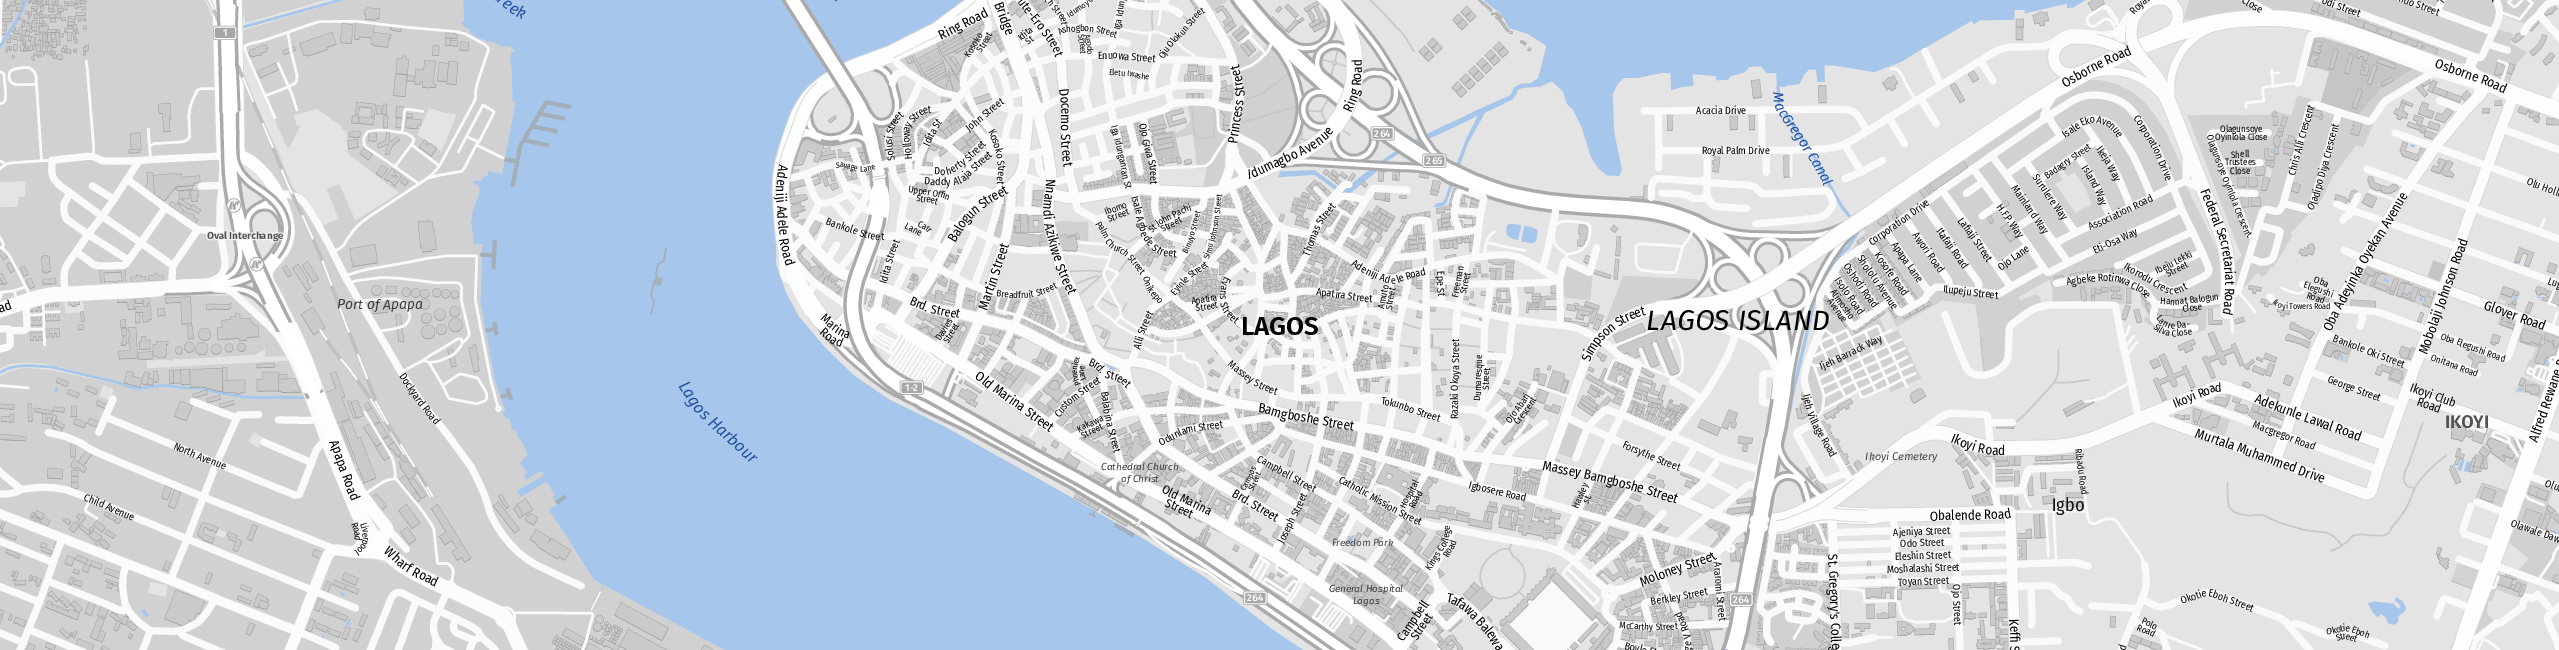 Stadtplan Lagos zum Downloaden.